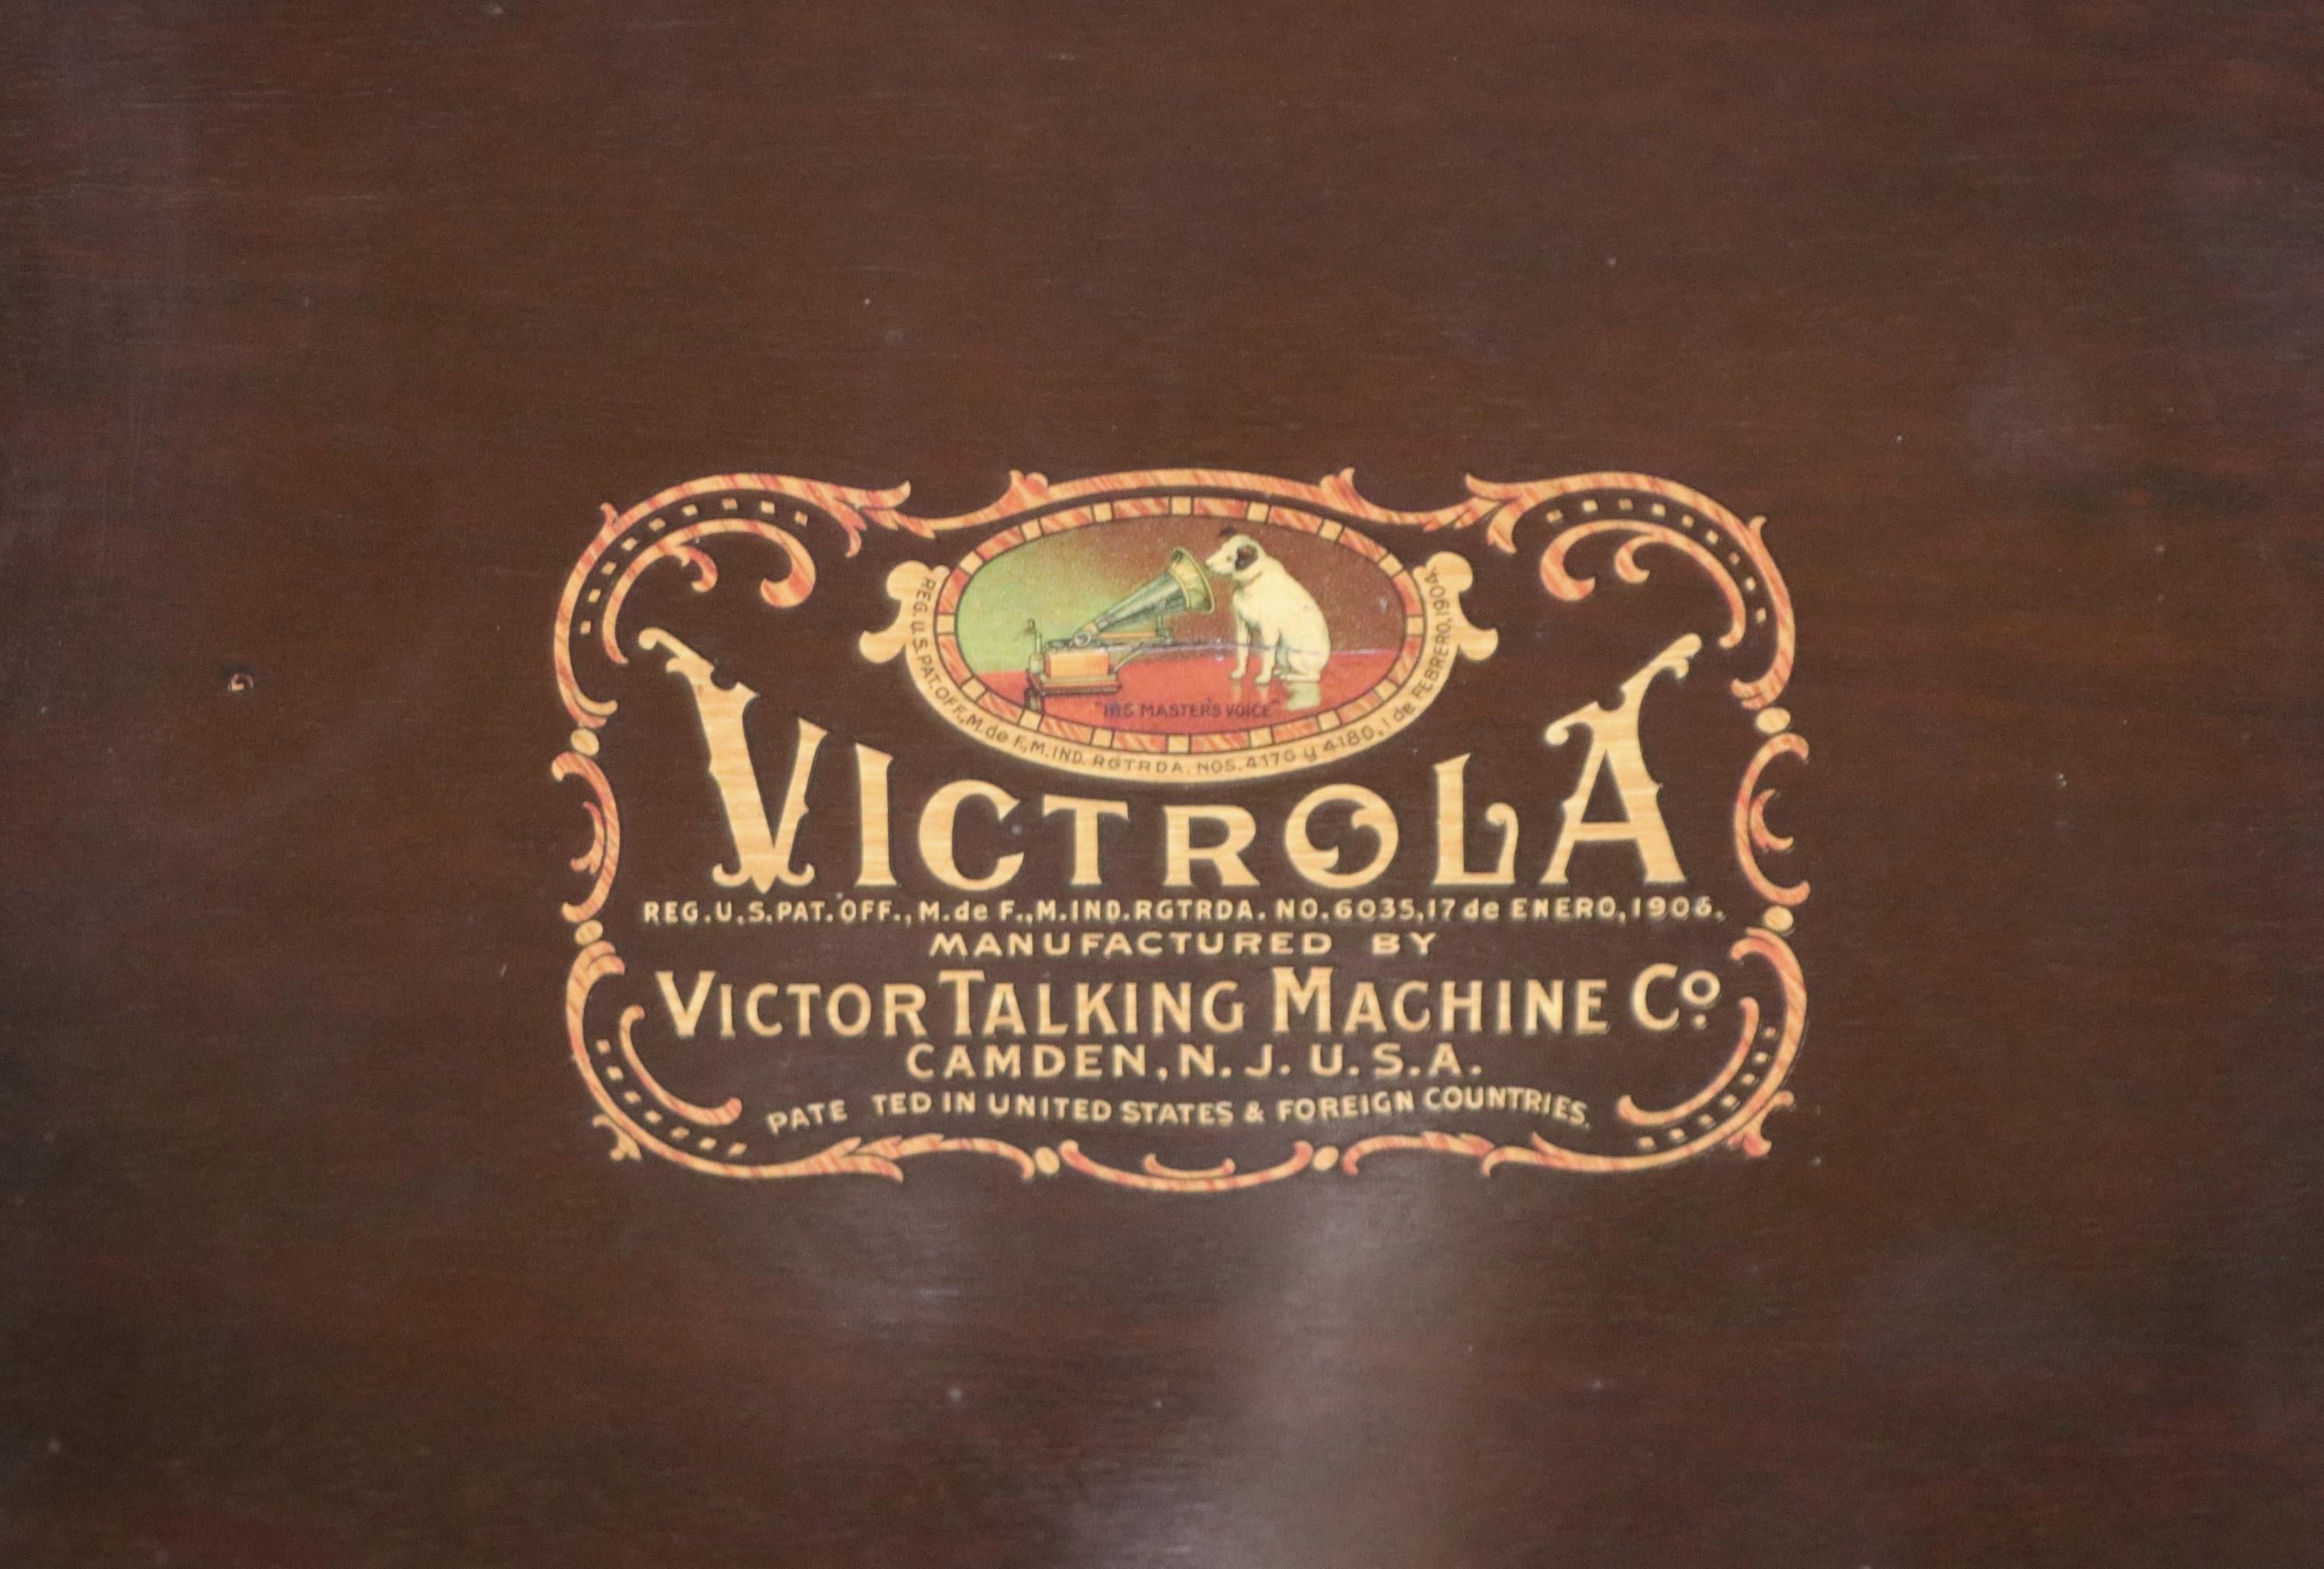 Antiker Victrola Phonograph VV-80 Standmodell. Es wurde von The Victrola Victor Talking Machine Company hergestellt, Modell VV-80 155529.  Der Phonograph hat ein dunkel getöntes Holzgehäuse mit einem Holzdeckel darunter. Diese Victrola Victor